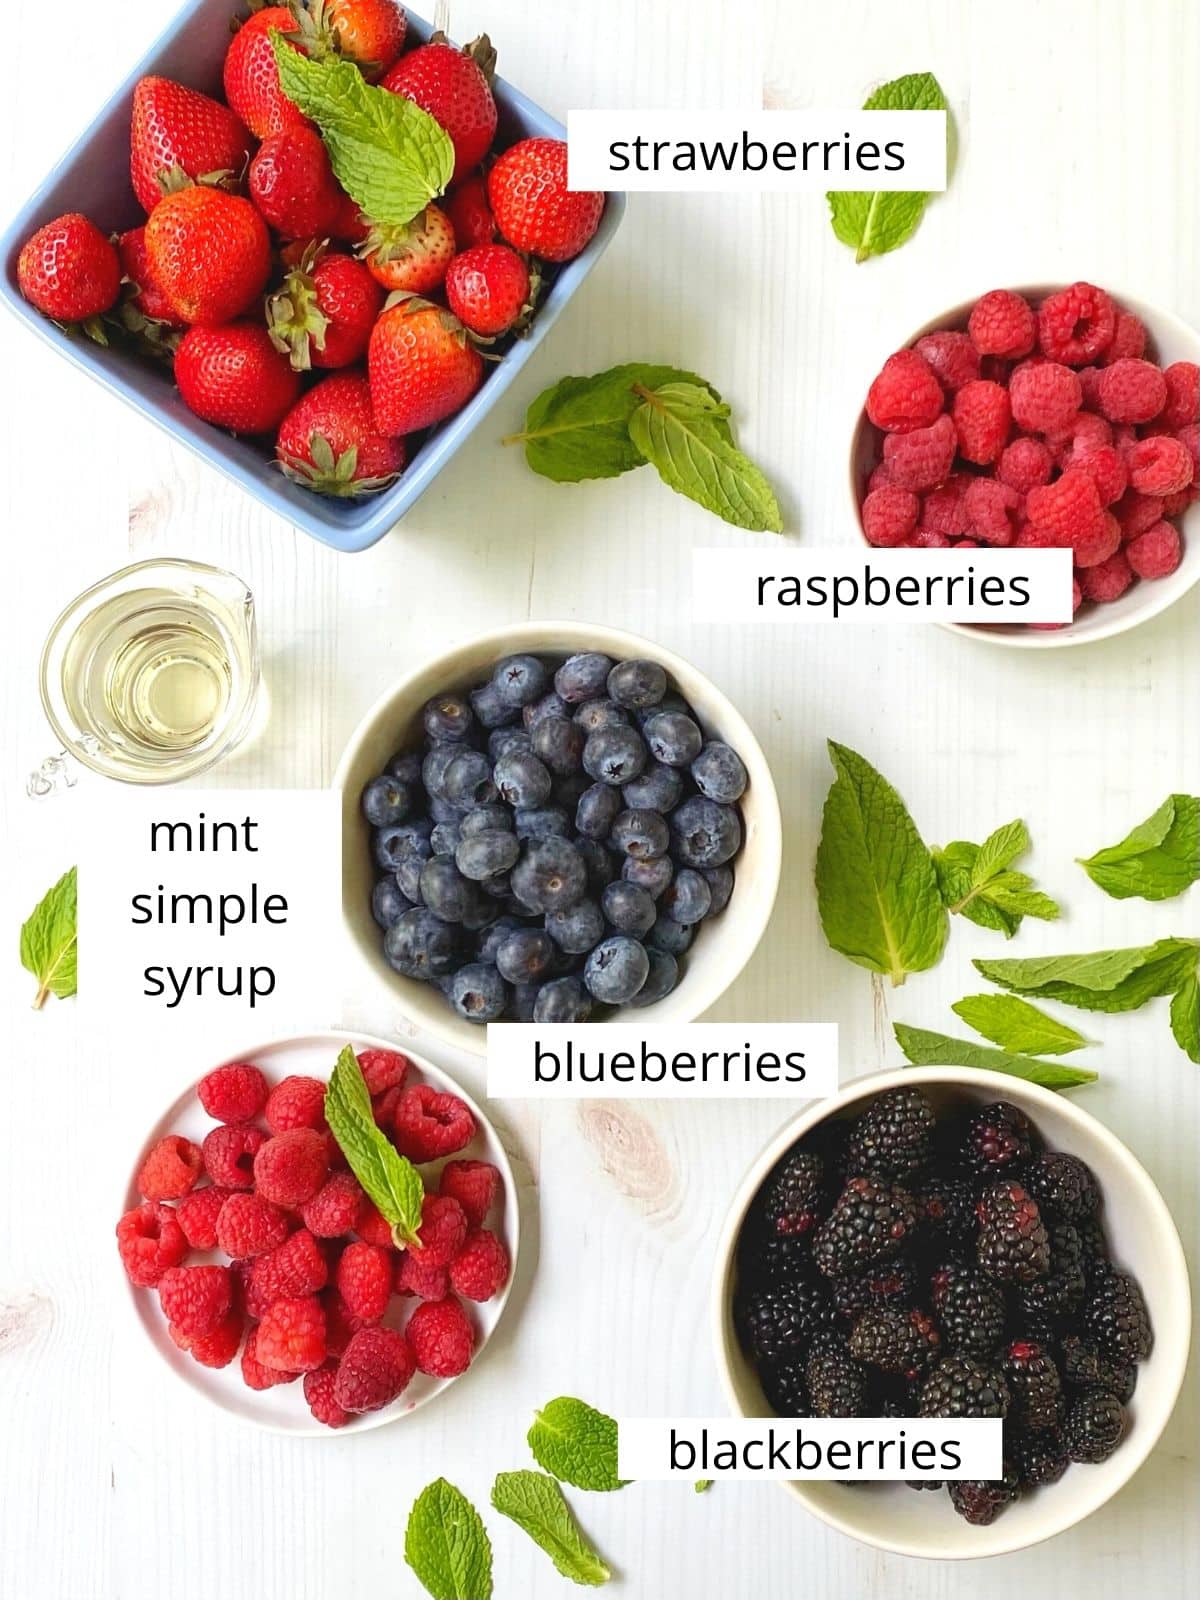 array of ingredients - strawberries, blueberries, raspberries, blackberries, mint simple syrup